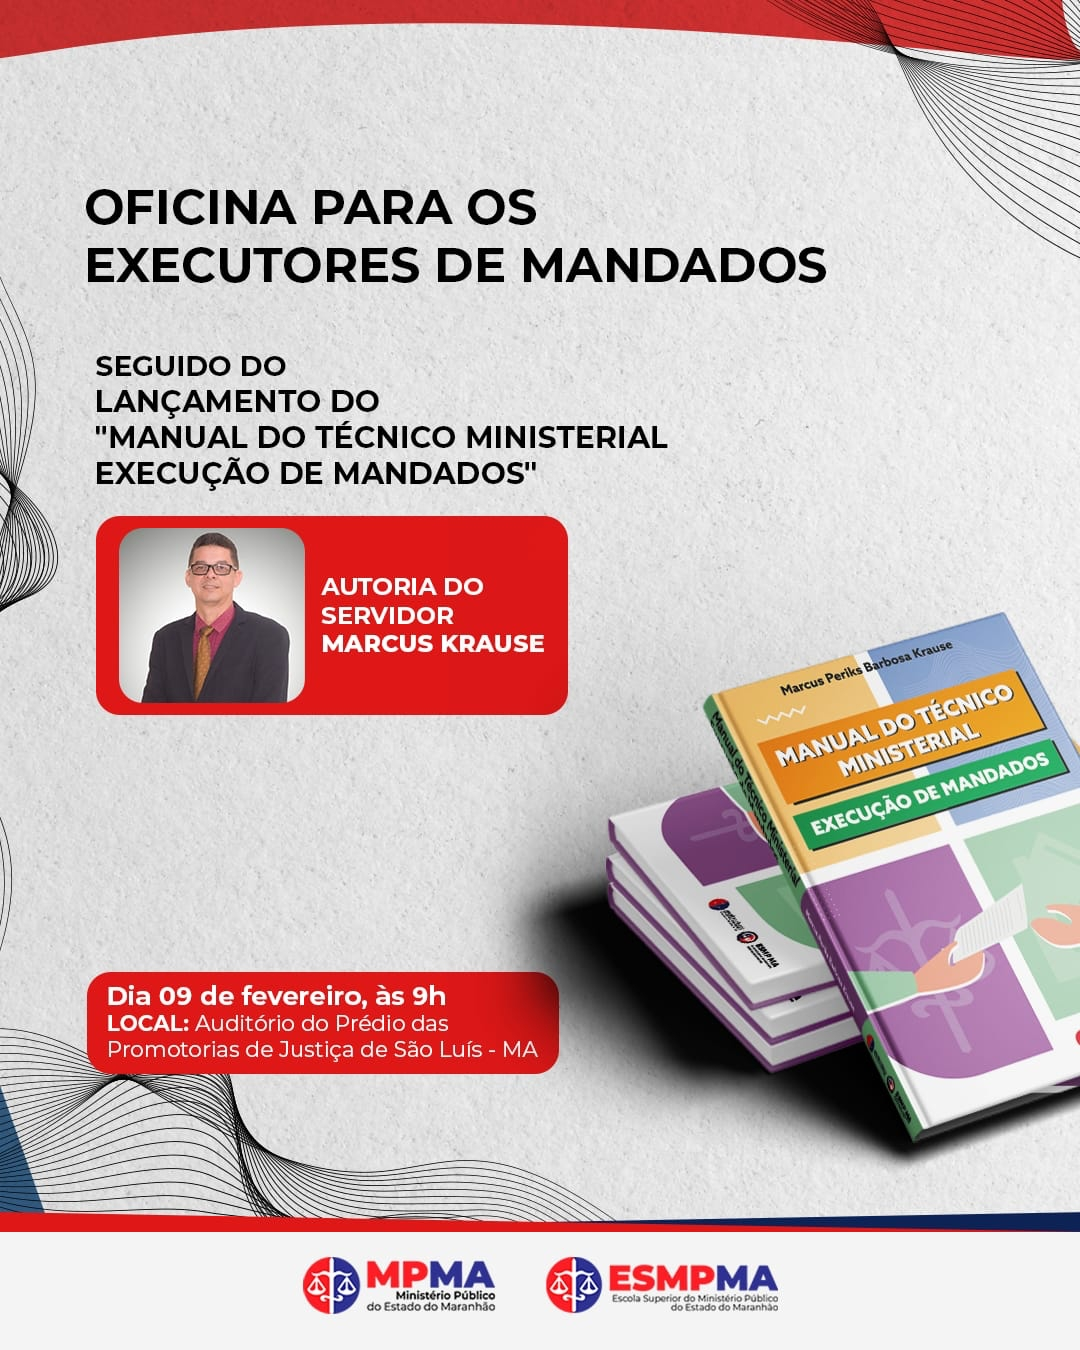 Oficina "Executores de Mandados" - Lançamento do "Manual do Técnico Ministerial Execução de Mandatos"